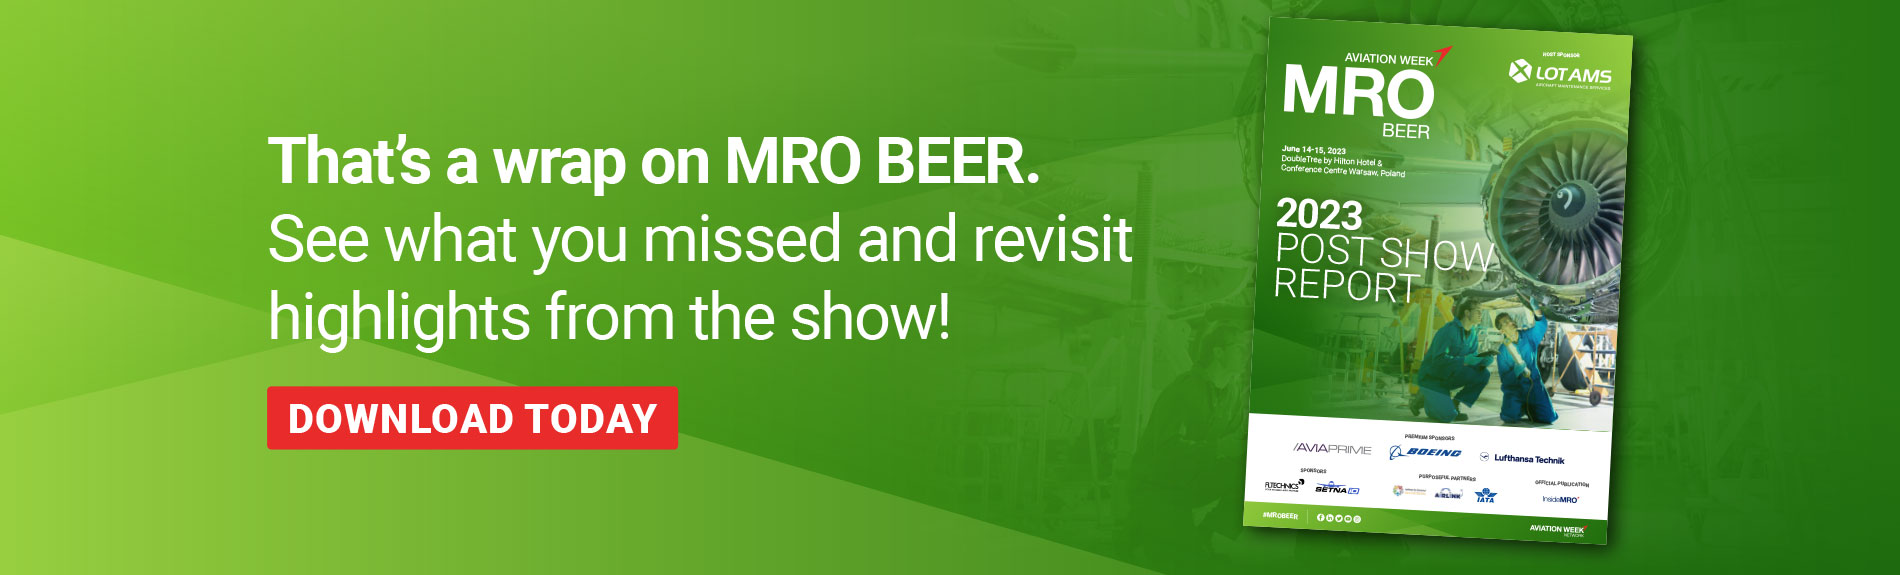 Download the MRO BEER post show report